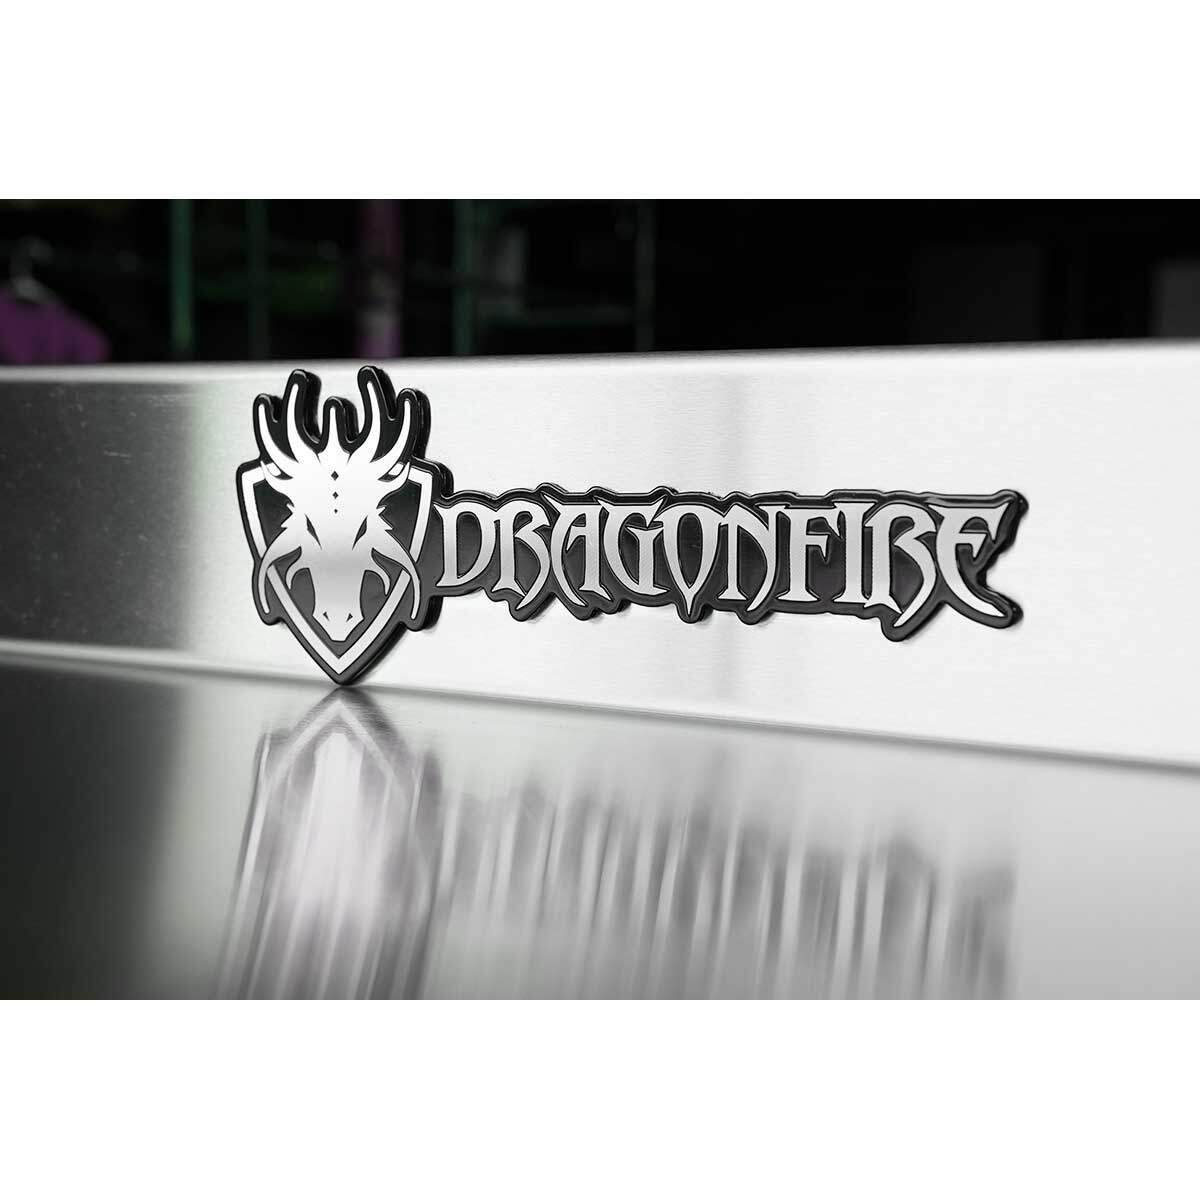 https://dragonfiretools.com/wp-content/uploads/2018/02/Dragonfire-Logo.jpg